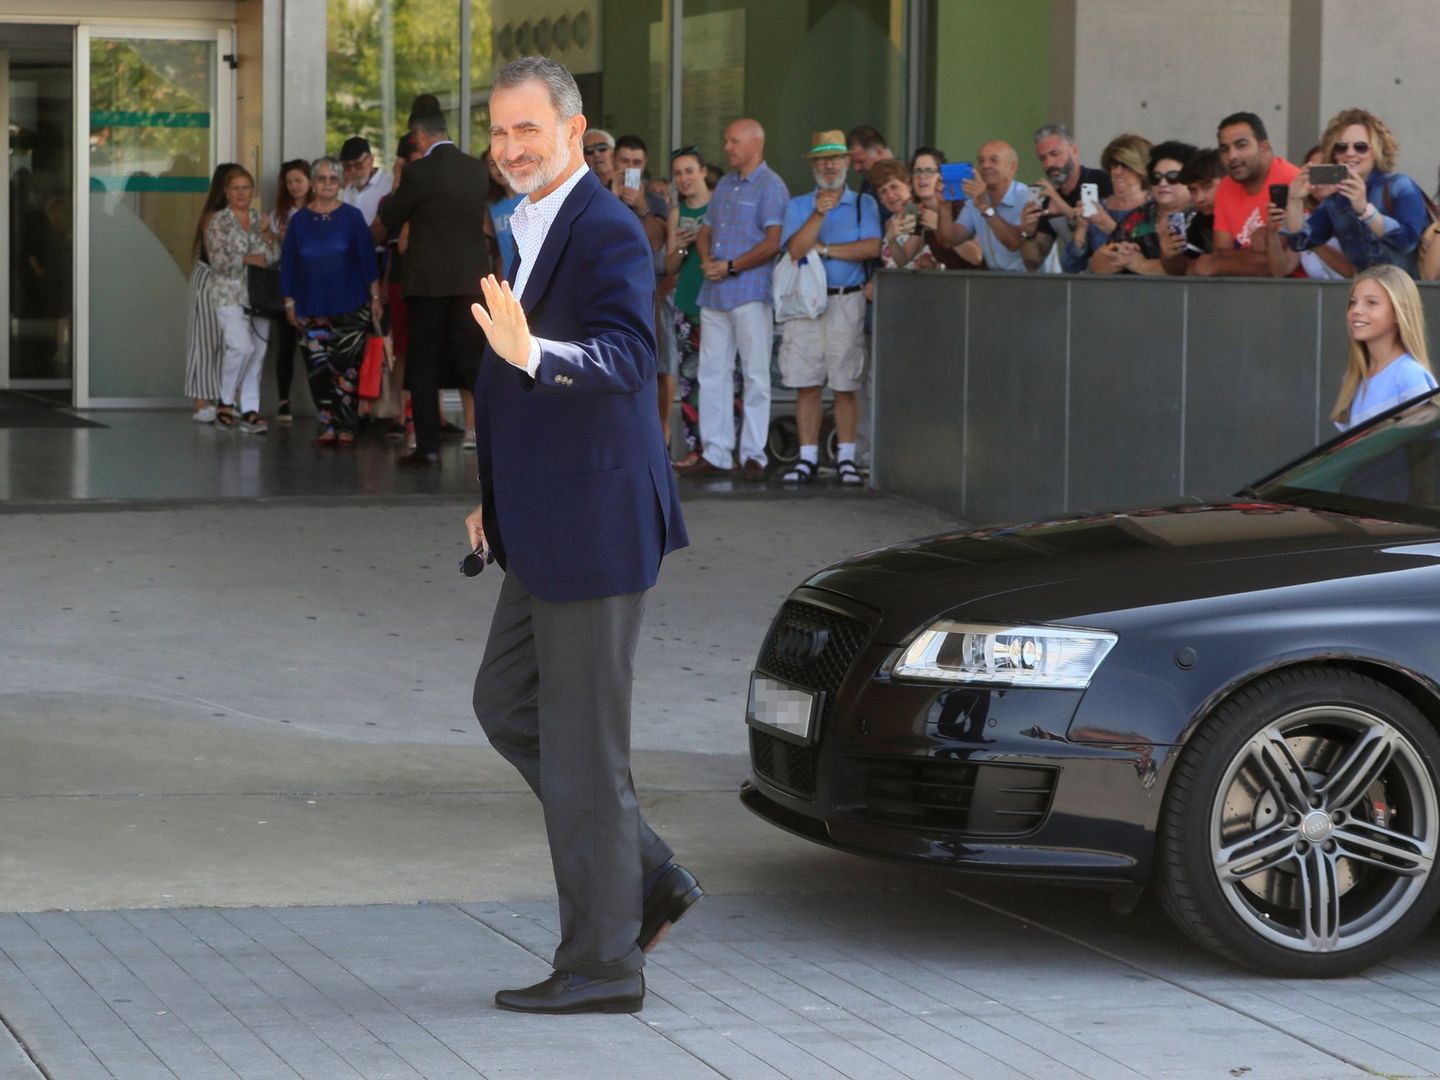 El rey Felipe, junto al Audi durante su visita al rey Juan Carlos tras su operación de corazón. (EFE)